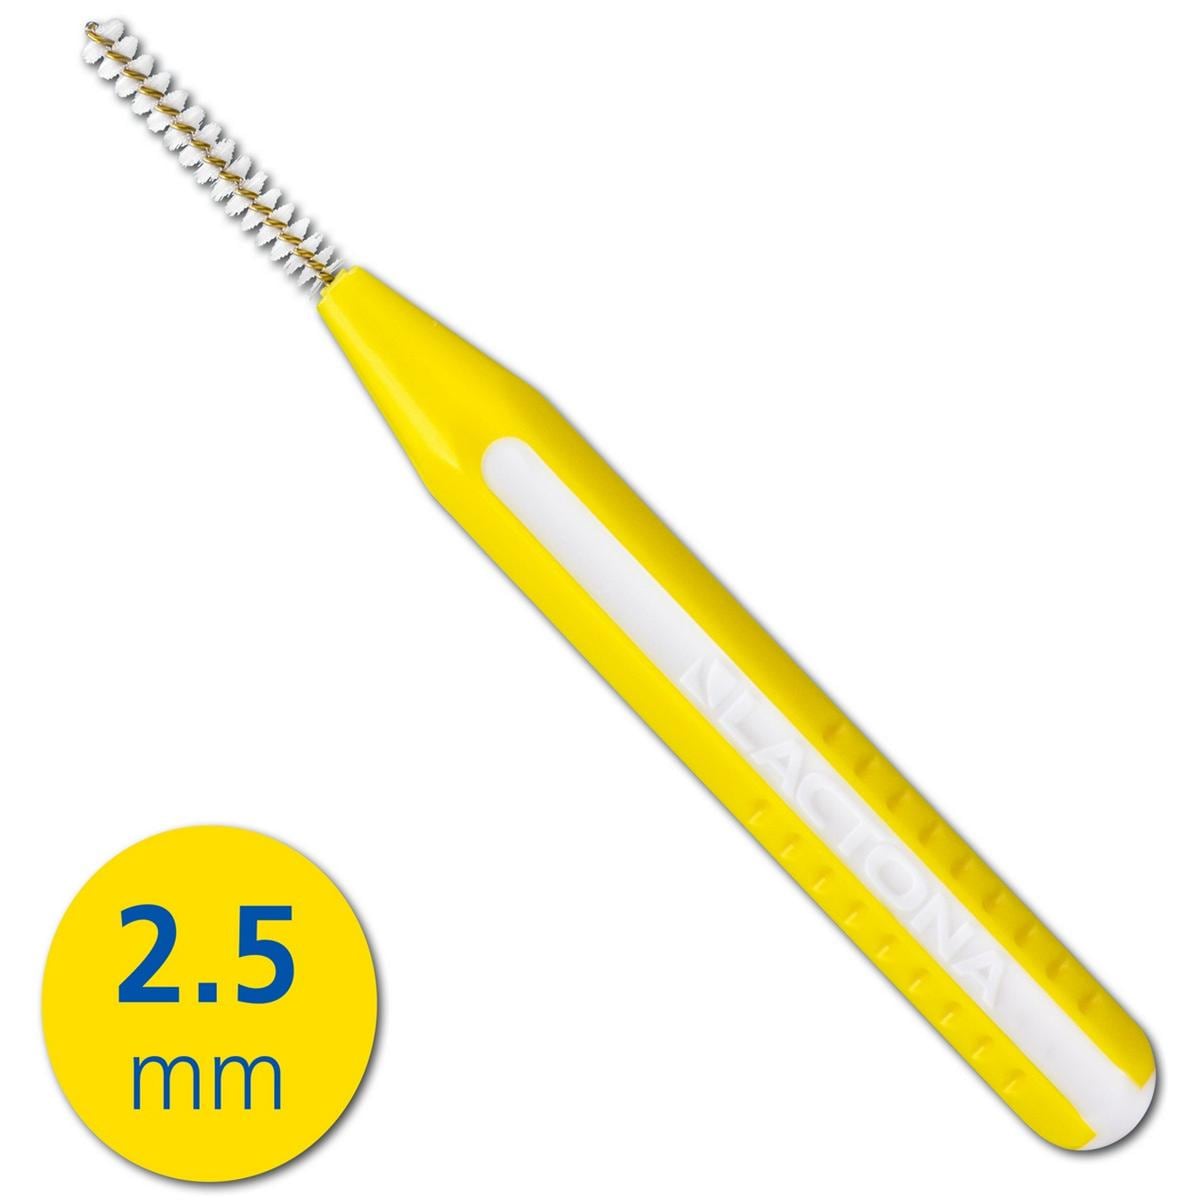 EasyGrip - navulling - 2,5 mm geel 200 stuks in gripzak